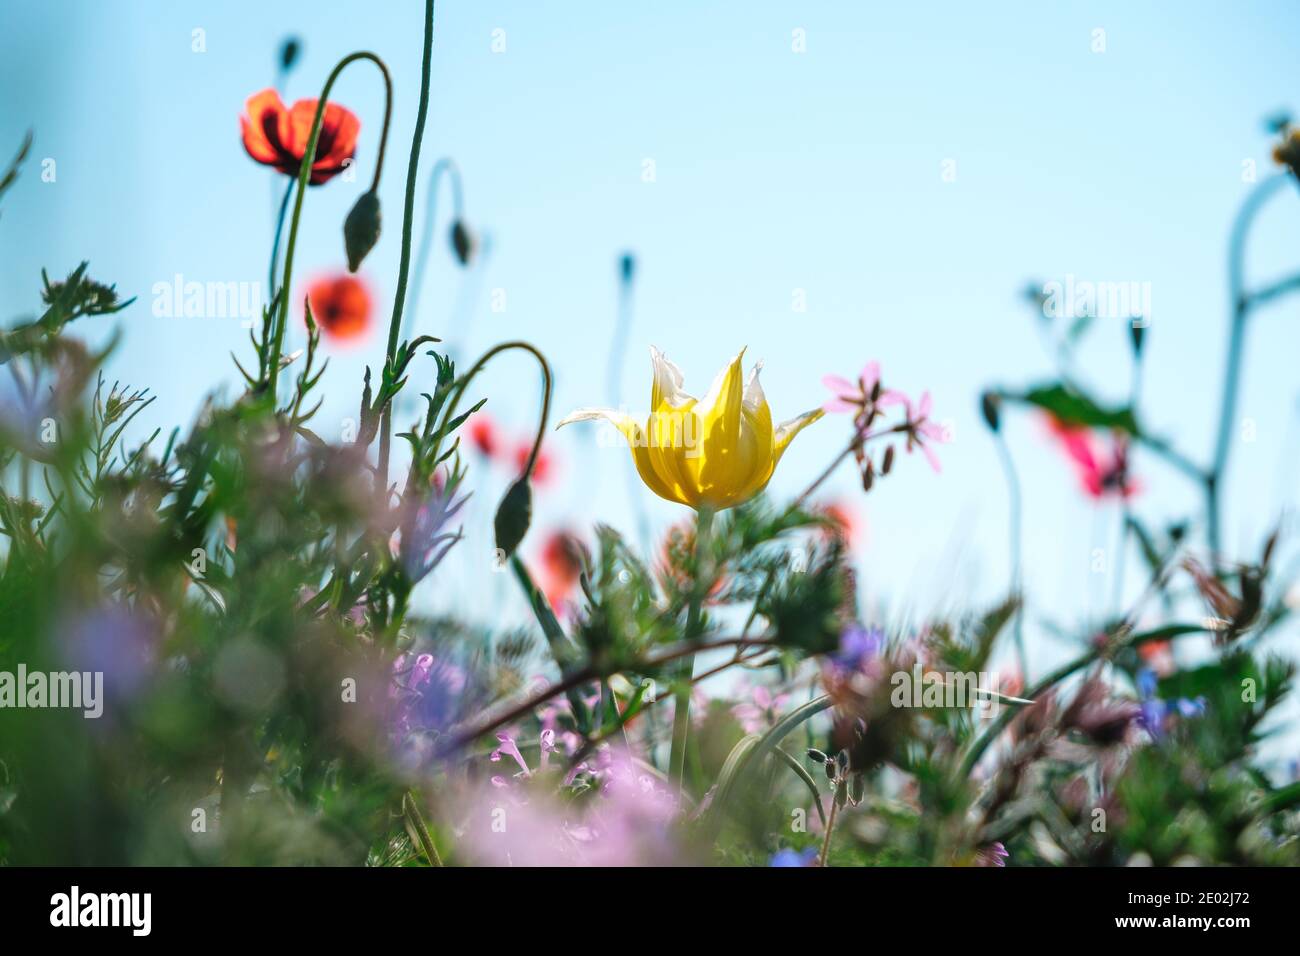 Tulipe jaune sauvage en gros plan avec des coquelicots rouges et d'autres fleurs printanières contre un ciel bleu. Banque D'Images